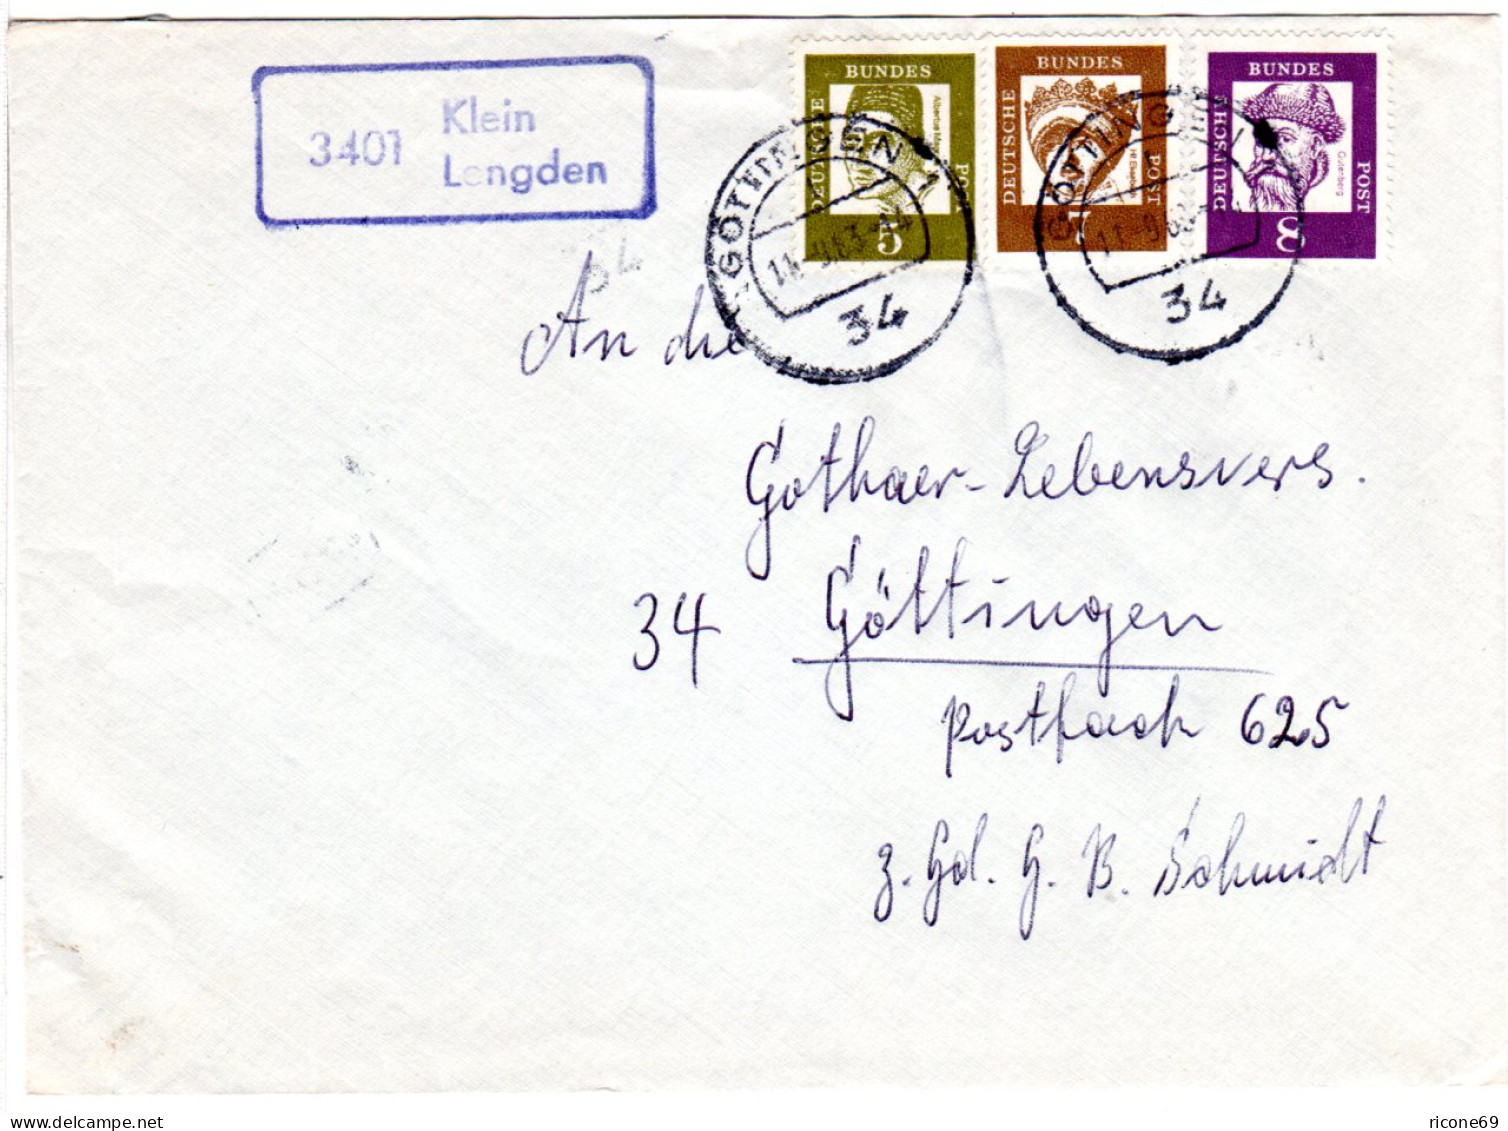 BRD 1963, Landpoststpl. 3401 Klein Lengden Auf Brief M. 5+7+8 Pf Gest. Göttingen - Lettres & Documents